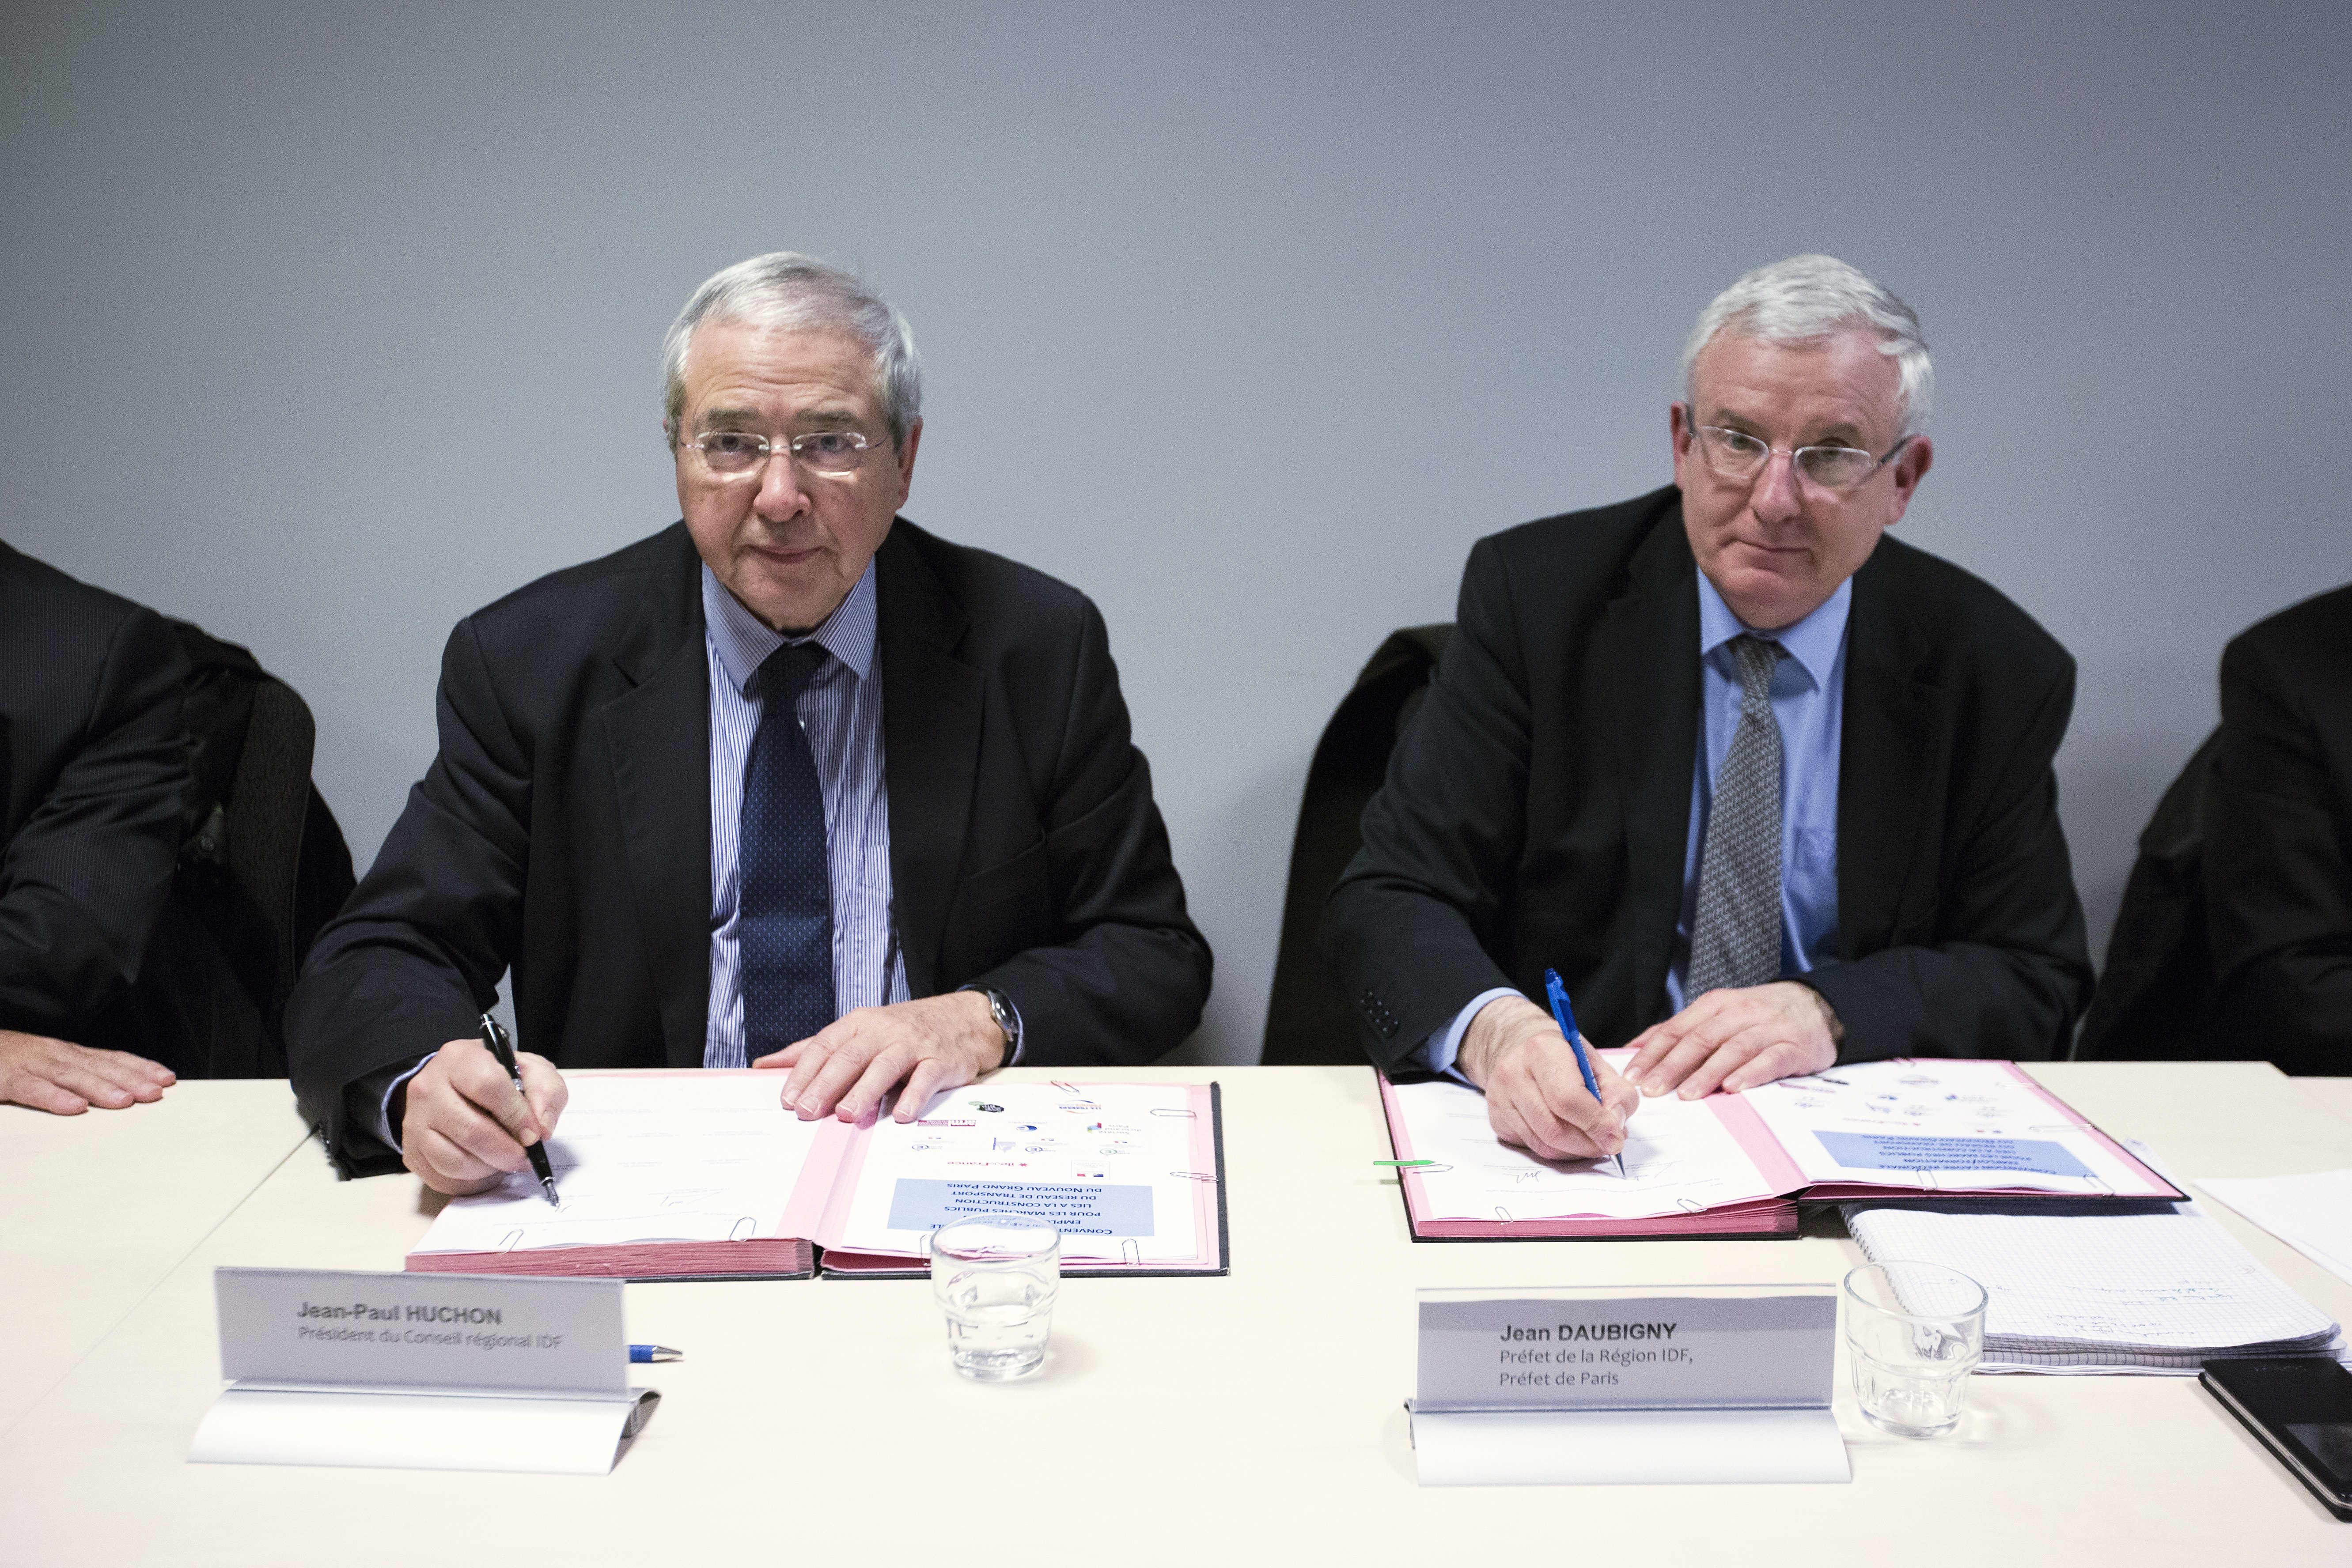 Jean-Paul Huchon, président du Conseil régional, et Jean Daubigny, préfet de région, signent la convention crédit Hugues-Marie Duclos